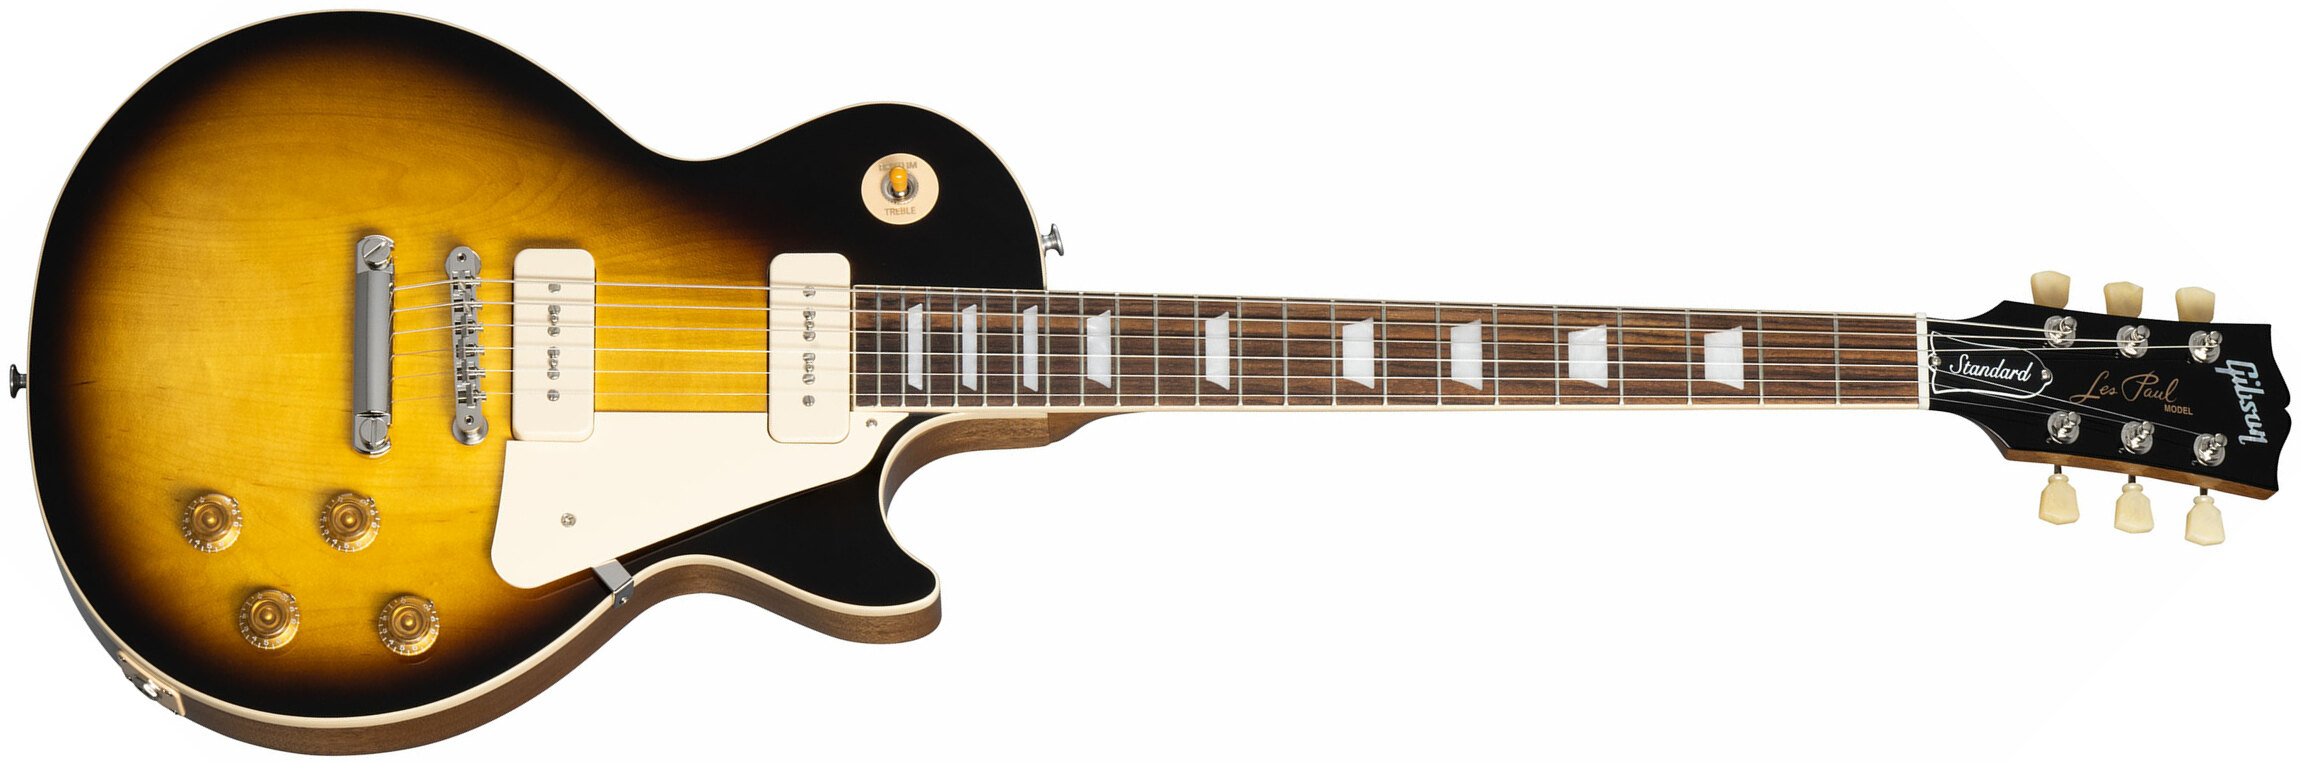 Gibson Les Paul Standard 50s P90 Original 2p90 Ht Rw - Tobacco Burst - Enkel gesneden elektrische gitaar - Main picture